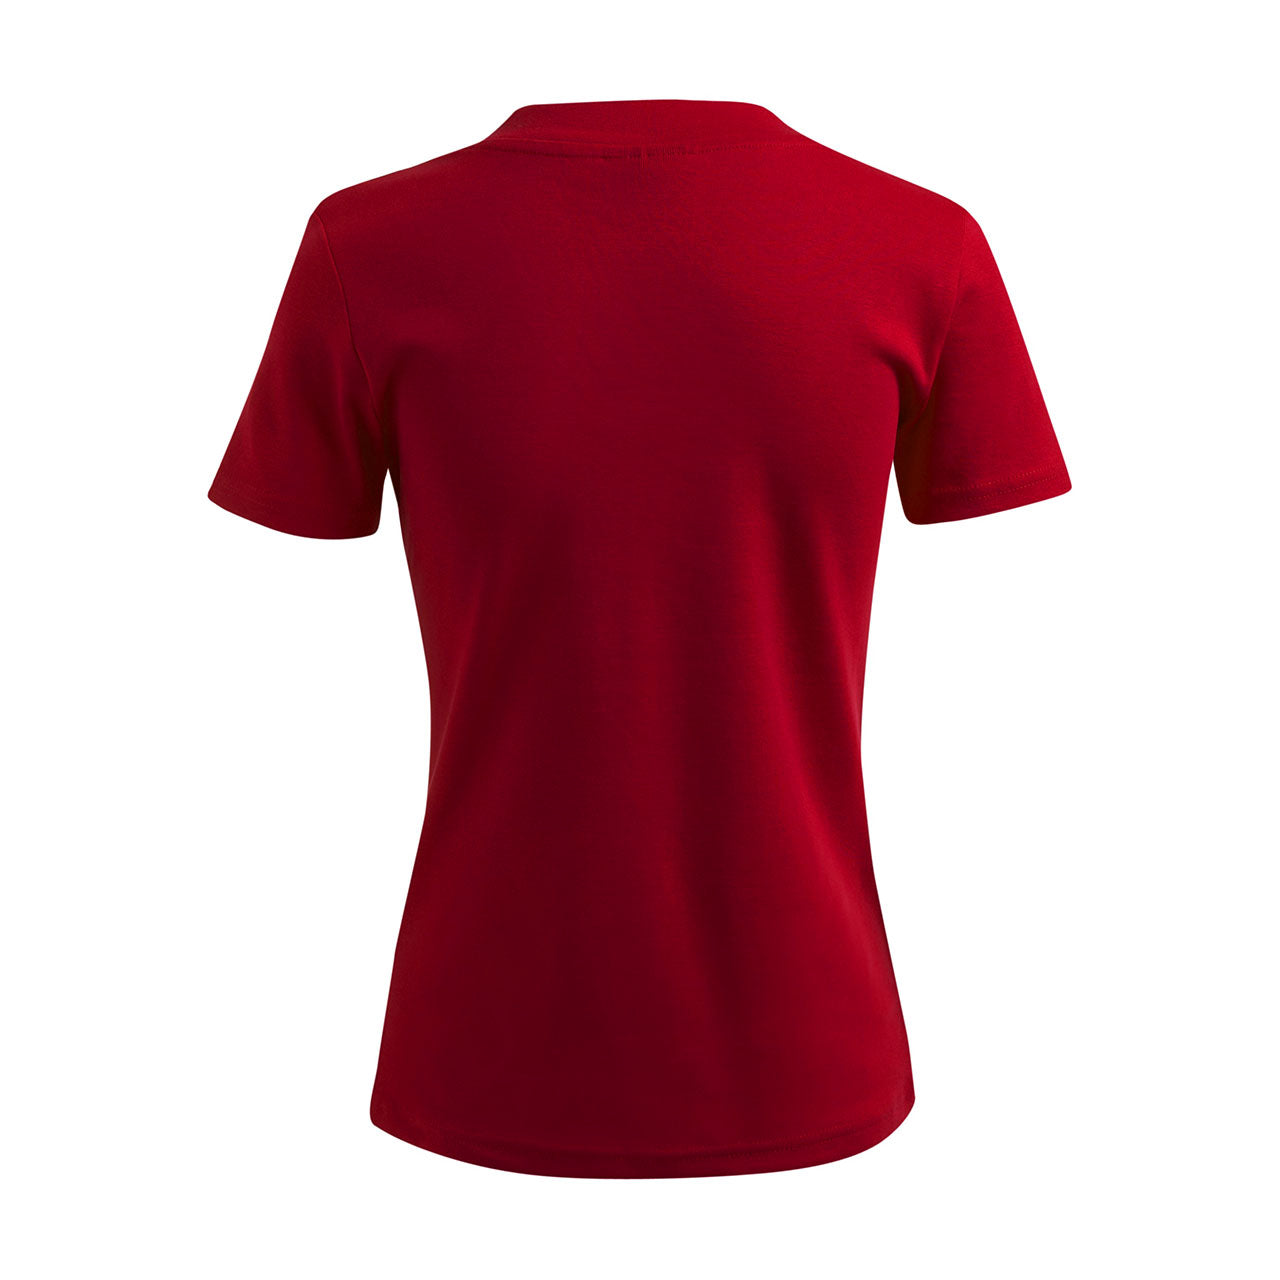 Damen T-Shirt mit V-Ausschnitt - Kölsche Liebe - Strass